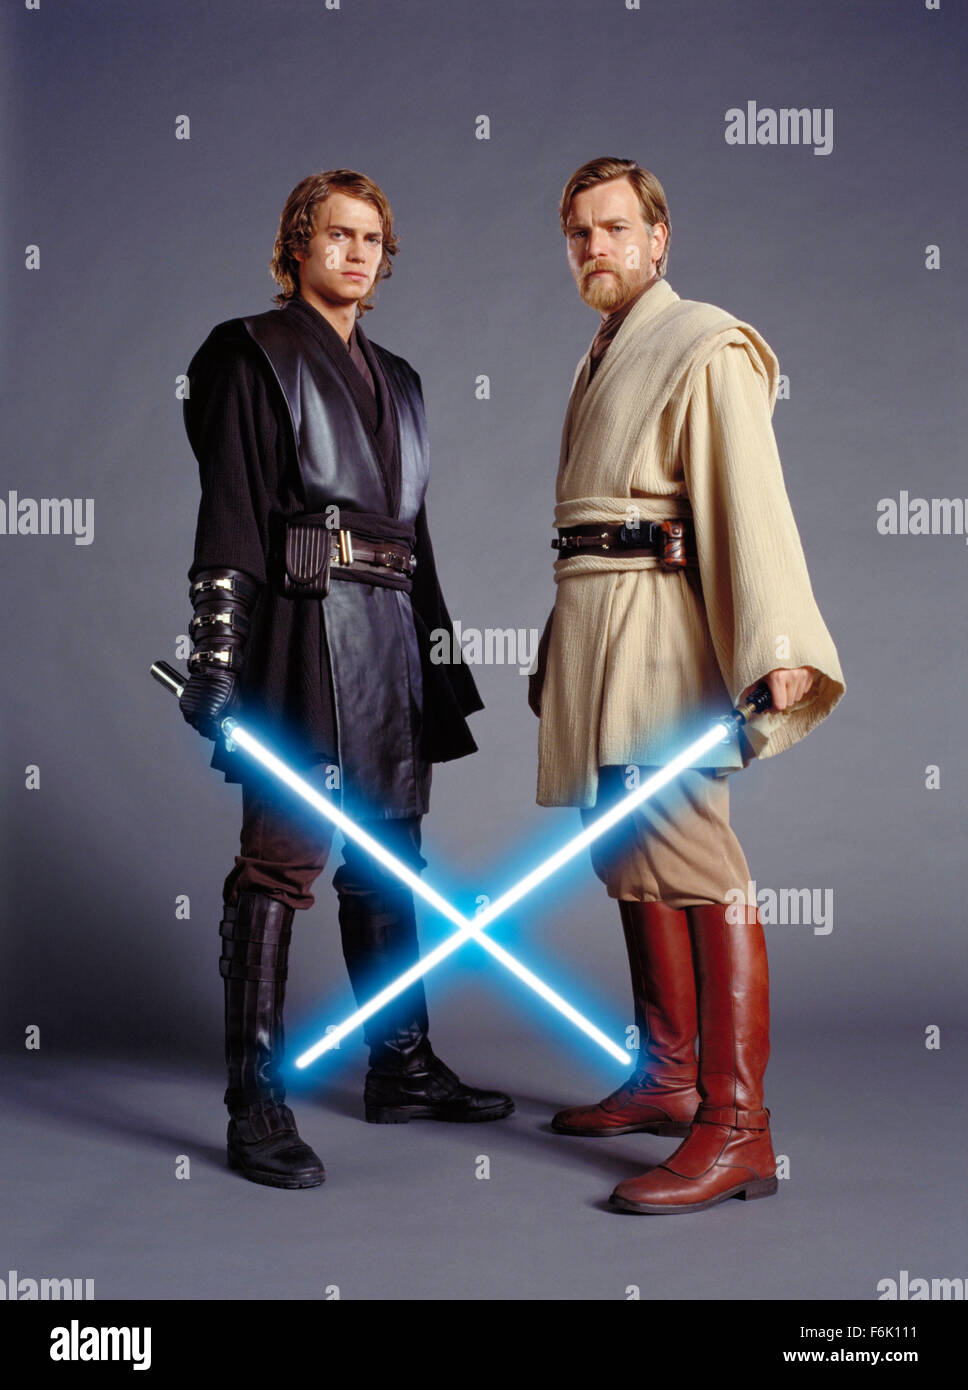 Fecha de lanzamiento: 19 de mayo de 2005. Película: Star Wars: Episodio III  La venganza de los Sith. Estudio: Lucasfilm. Parcela: una maduración Anakin  Skywalker pasa al lado oscuro de la fuerza